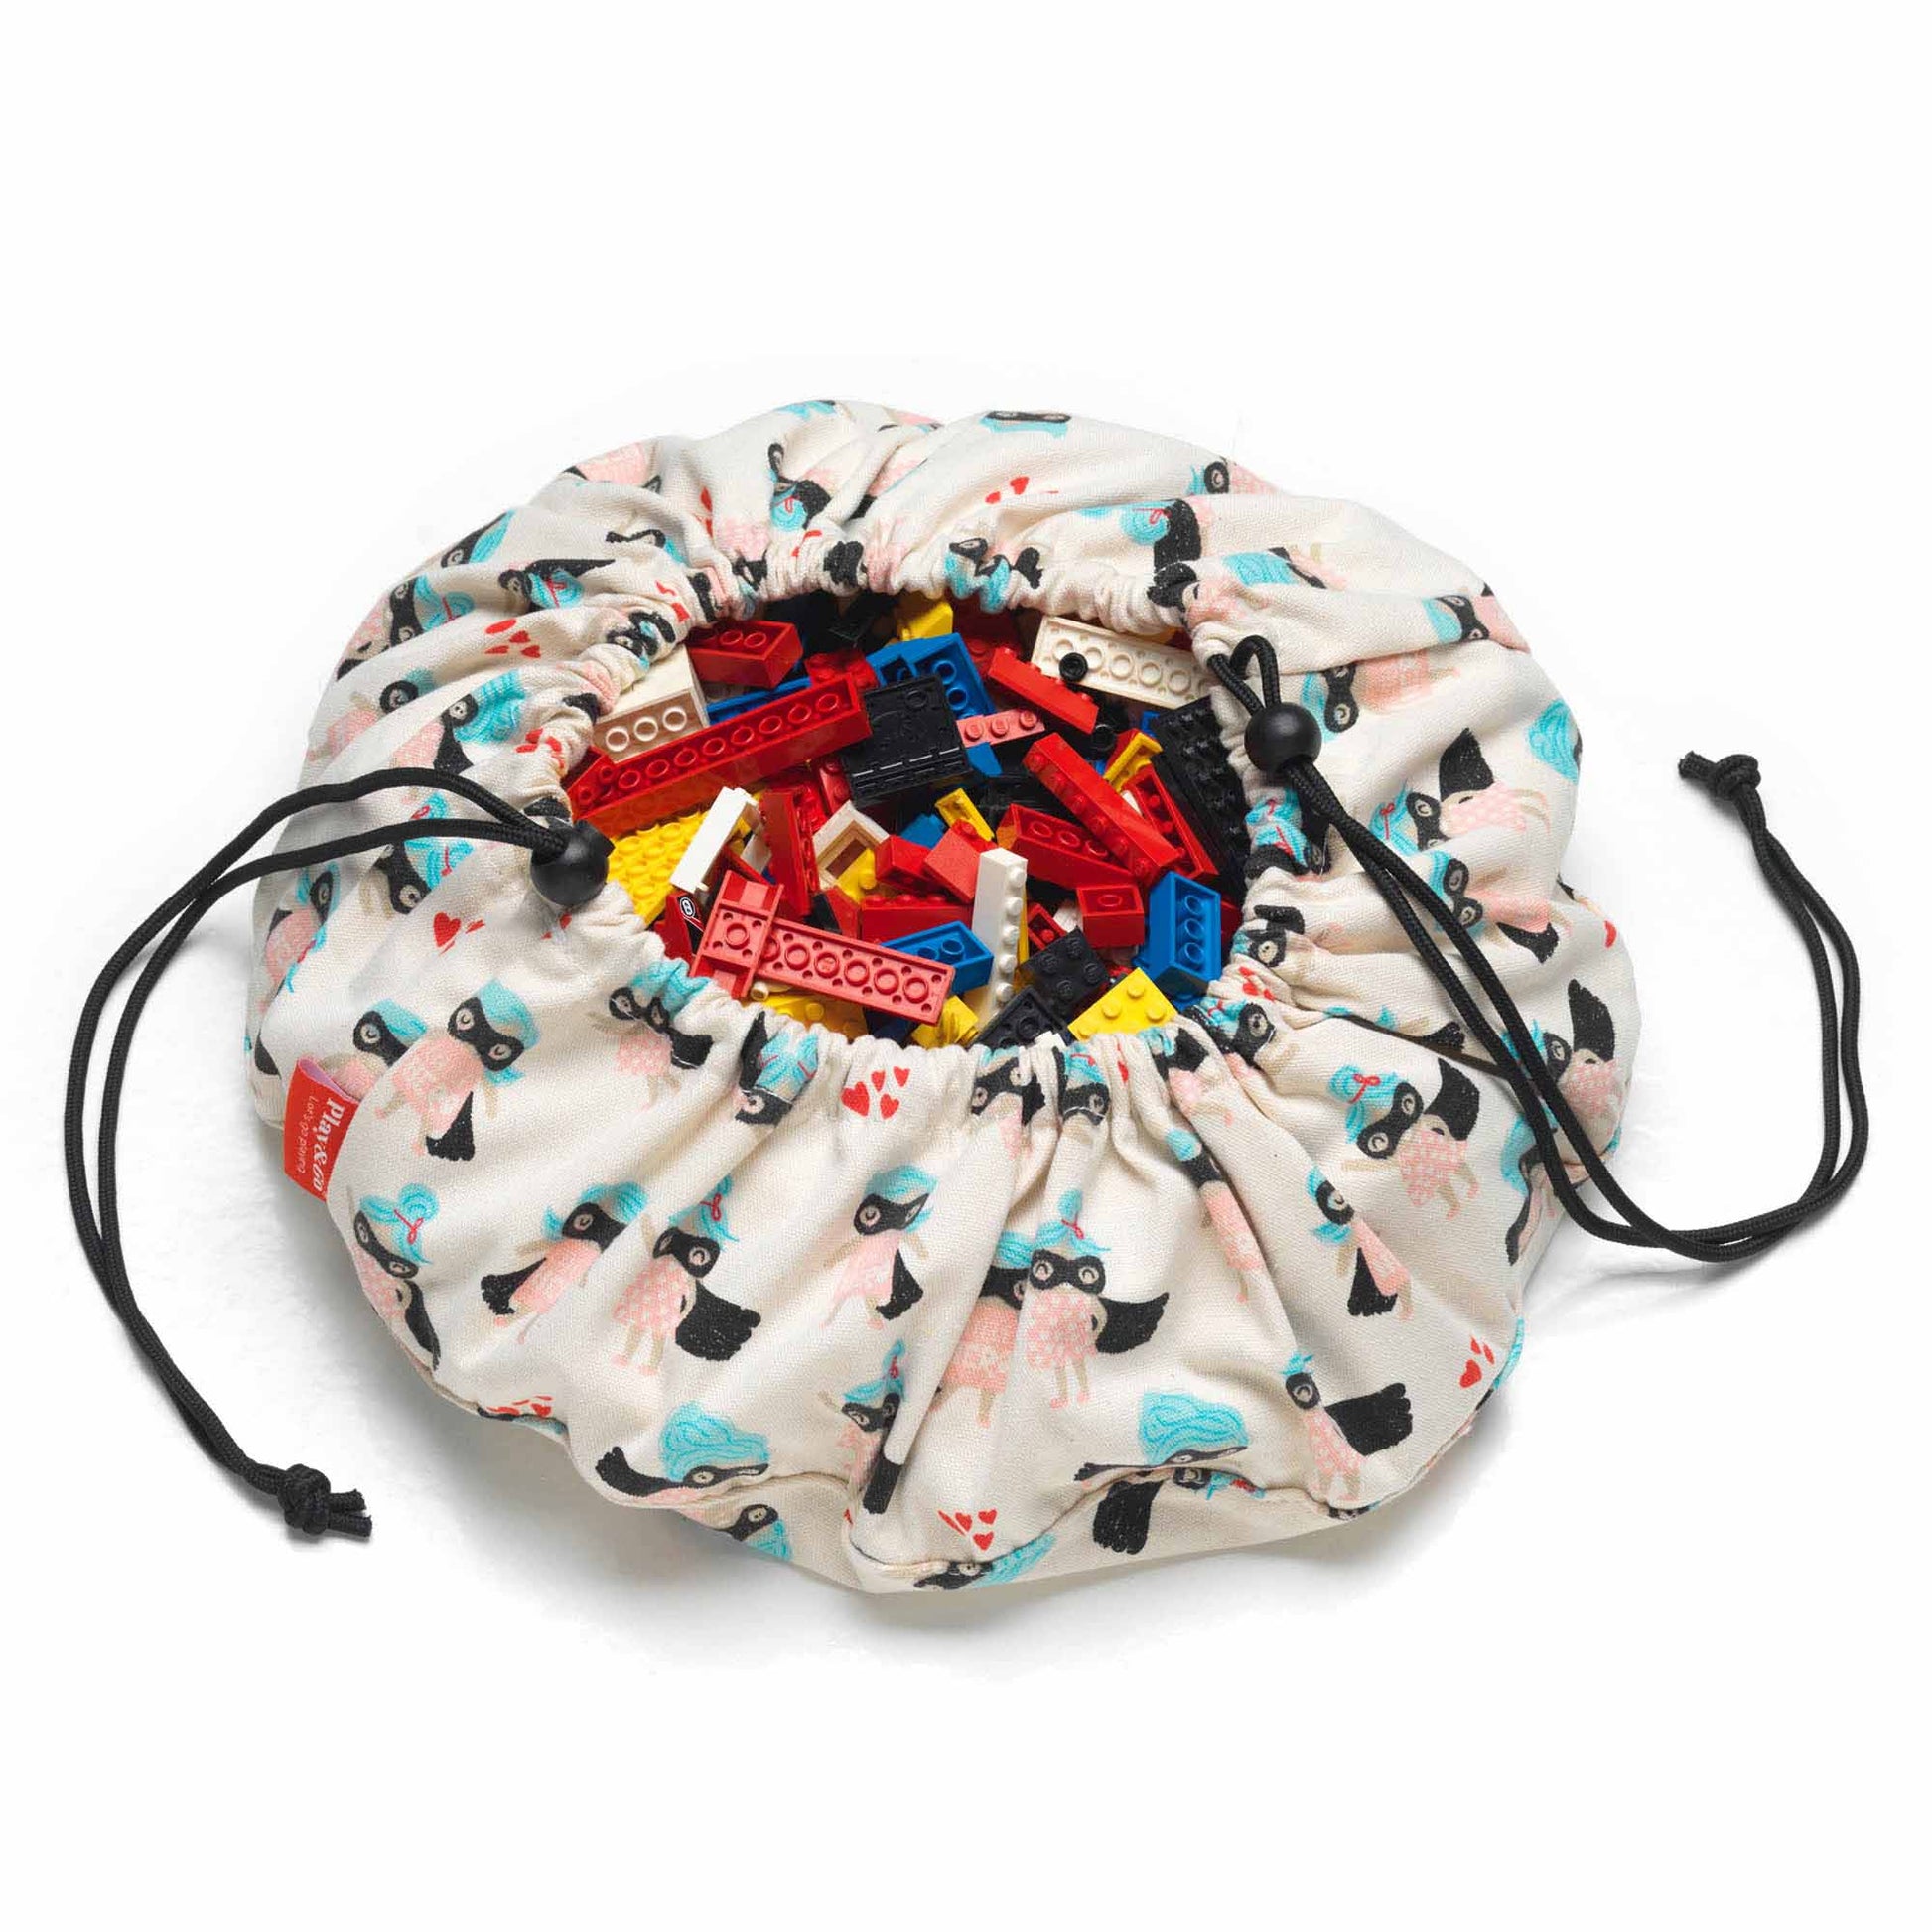 PLAY & GO - Mini Super Girl Play & Go Storage Bag - BambiniJO | Buy Online | Jordan